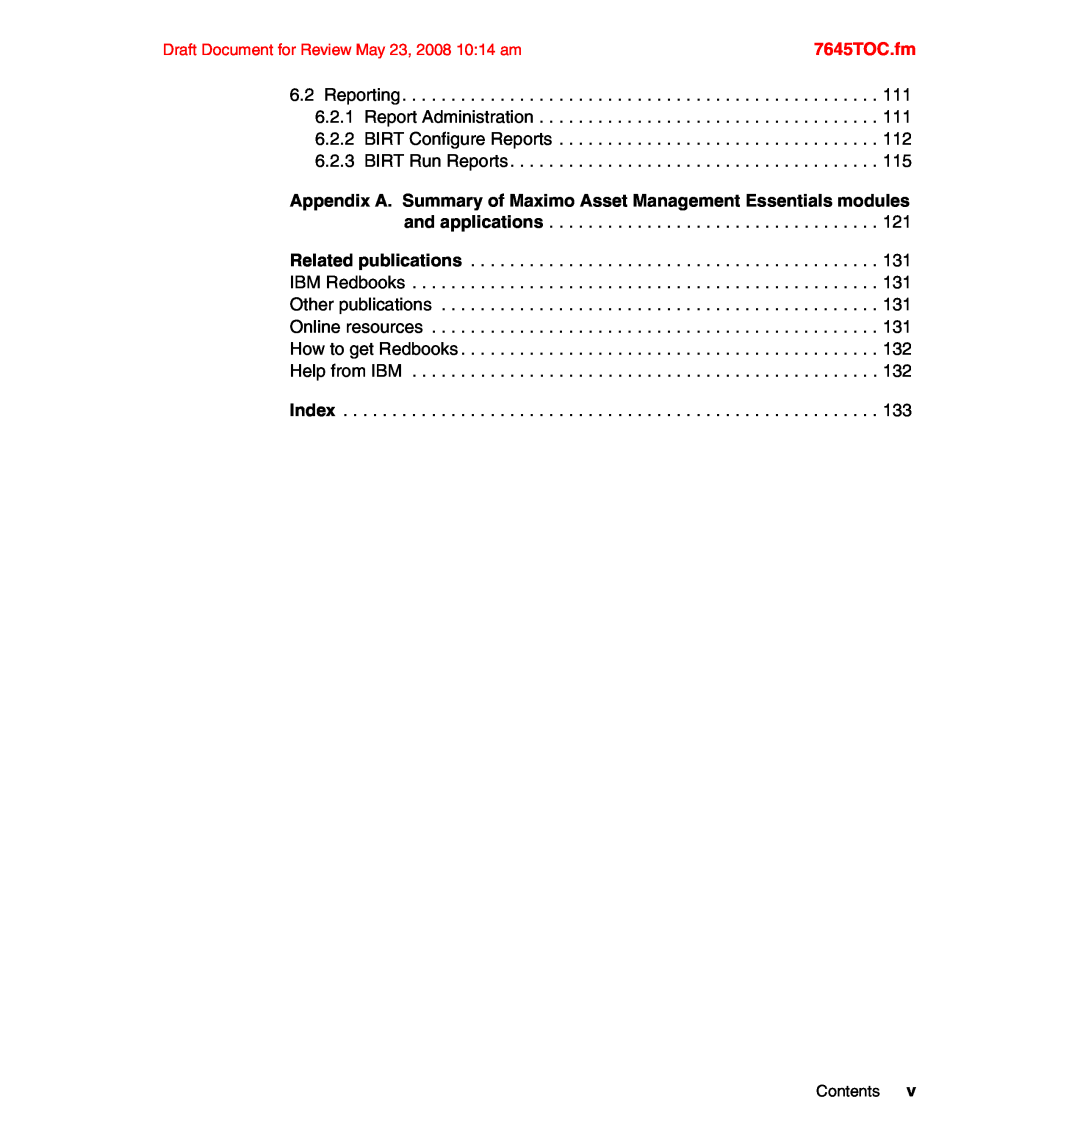 IBM SG24-7645-00 manual 7645TOC.fm, Contents 